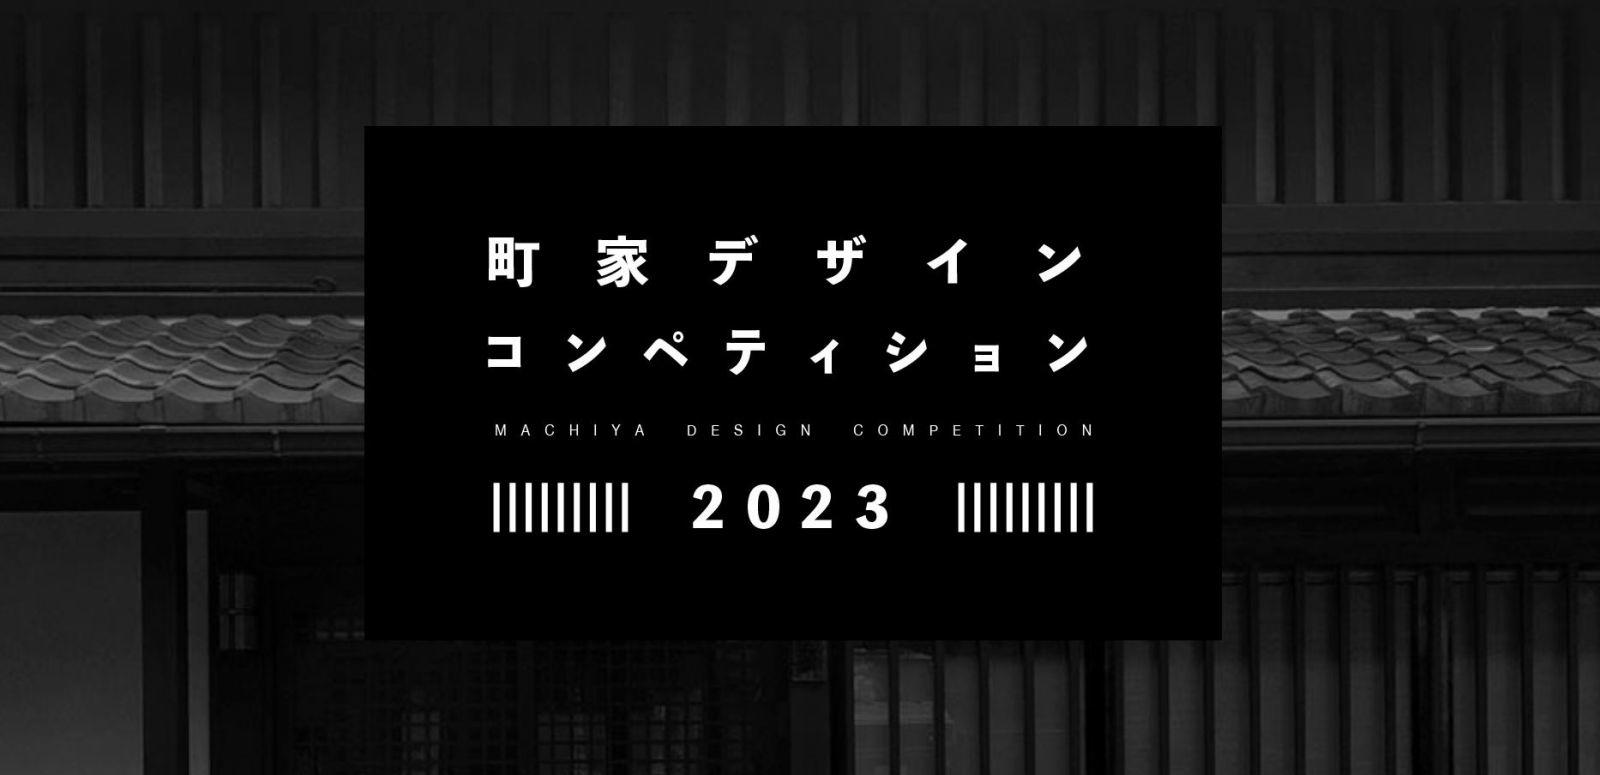 大阪電気通信大学が「町家デザインコンペ2023」を開催 -- 京都の伝統的な町家の利活用アイデアを、ジュニアコース（高校生対象）とシニアコース（大学生・社会人対象）で募集